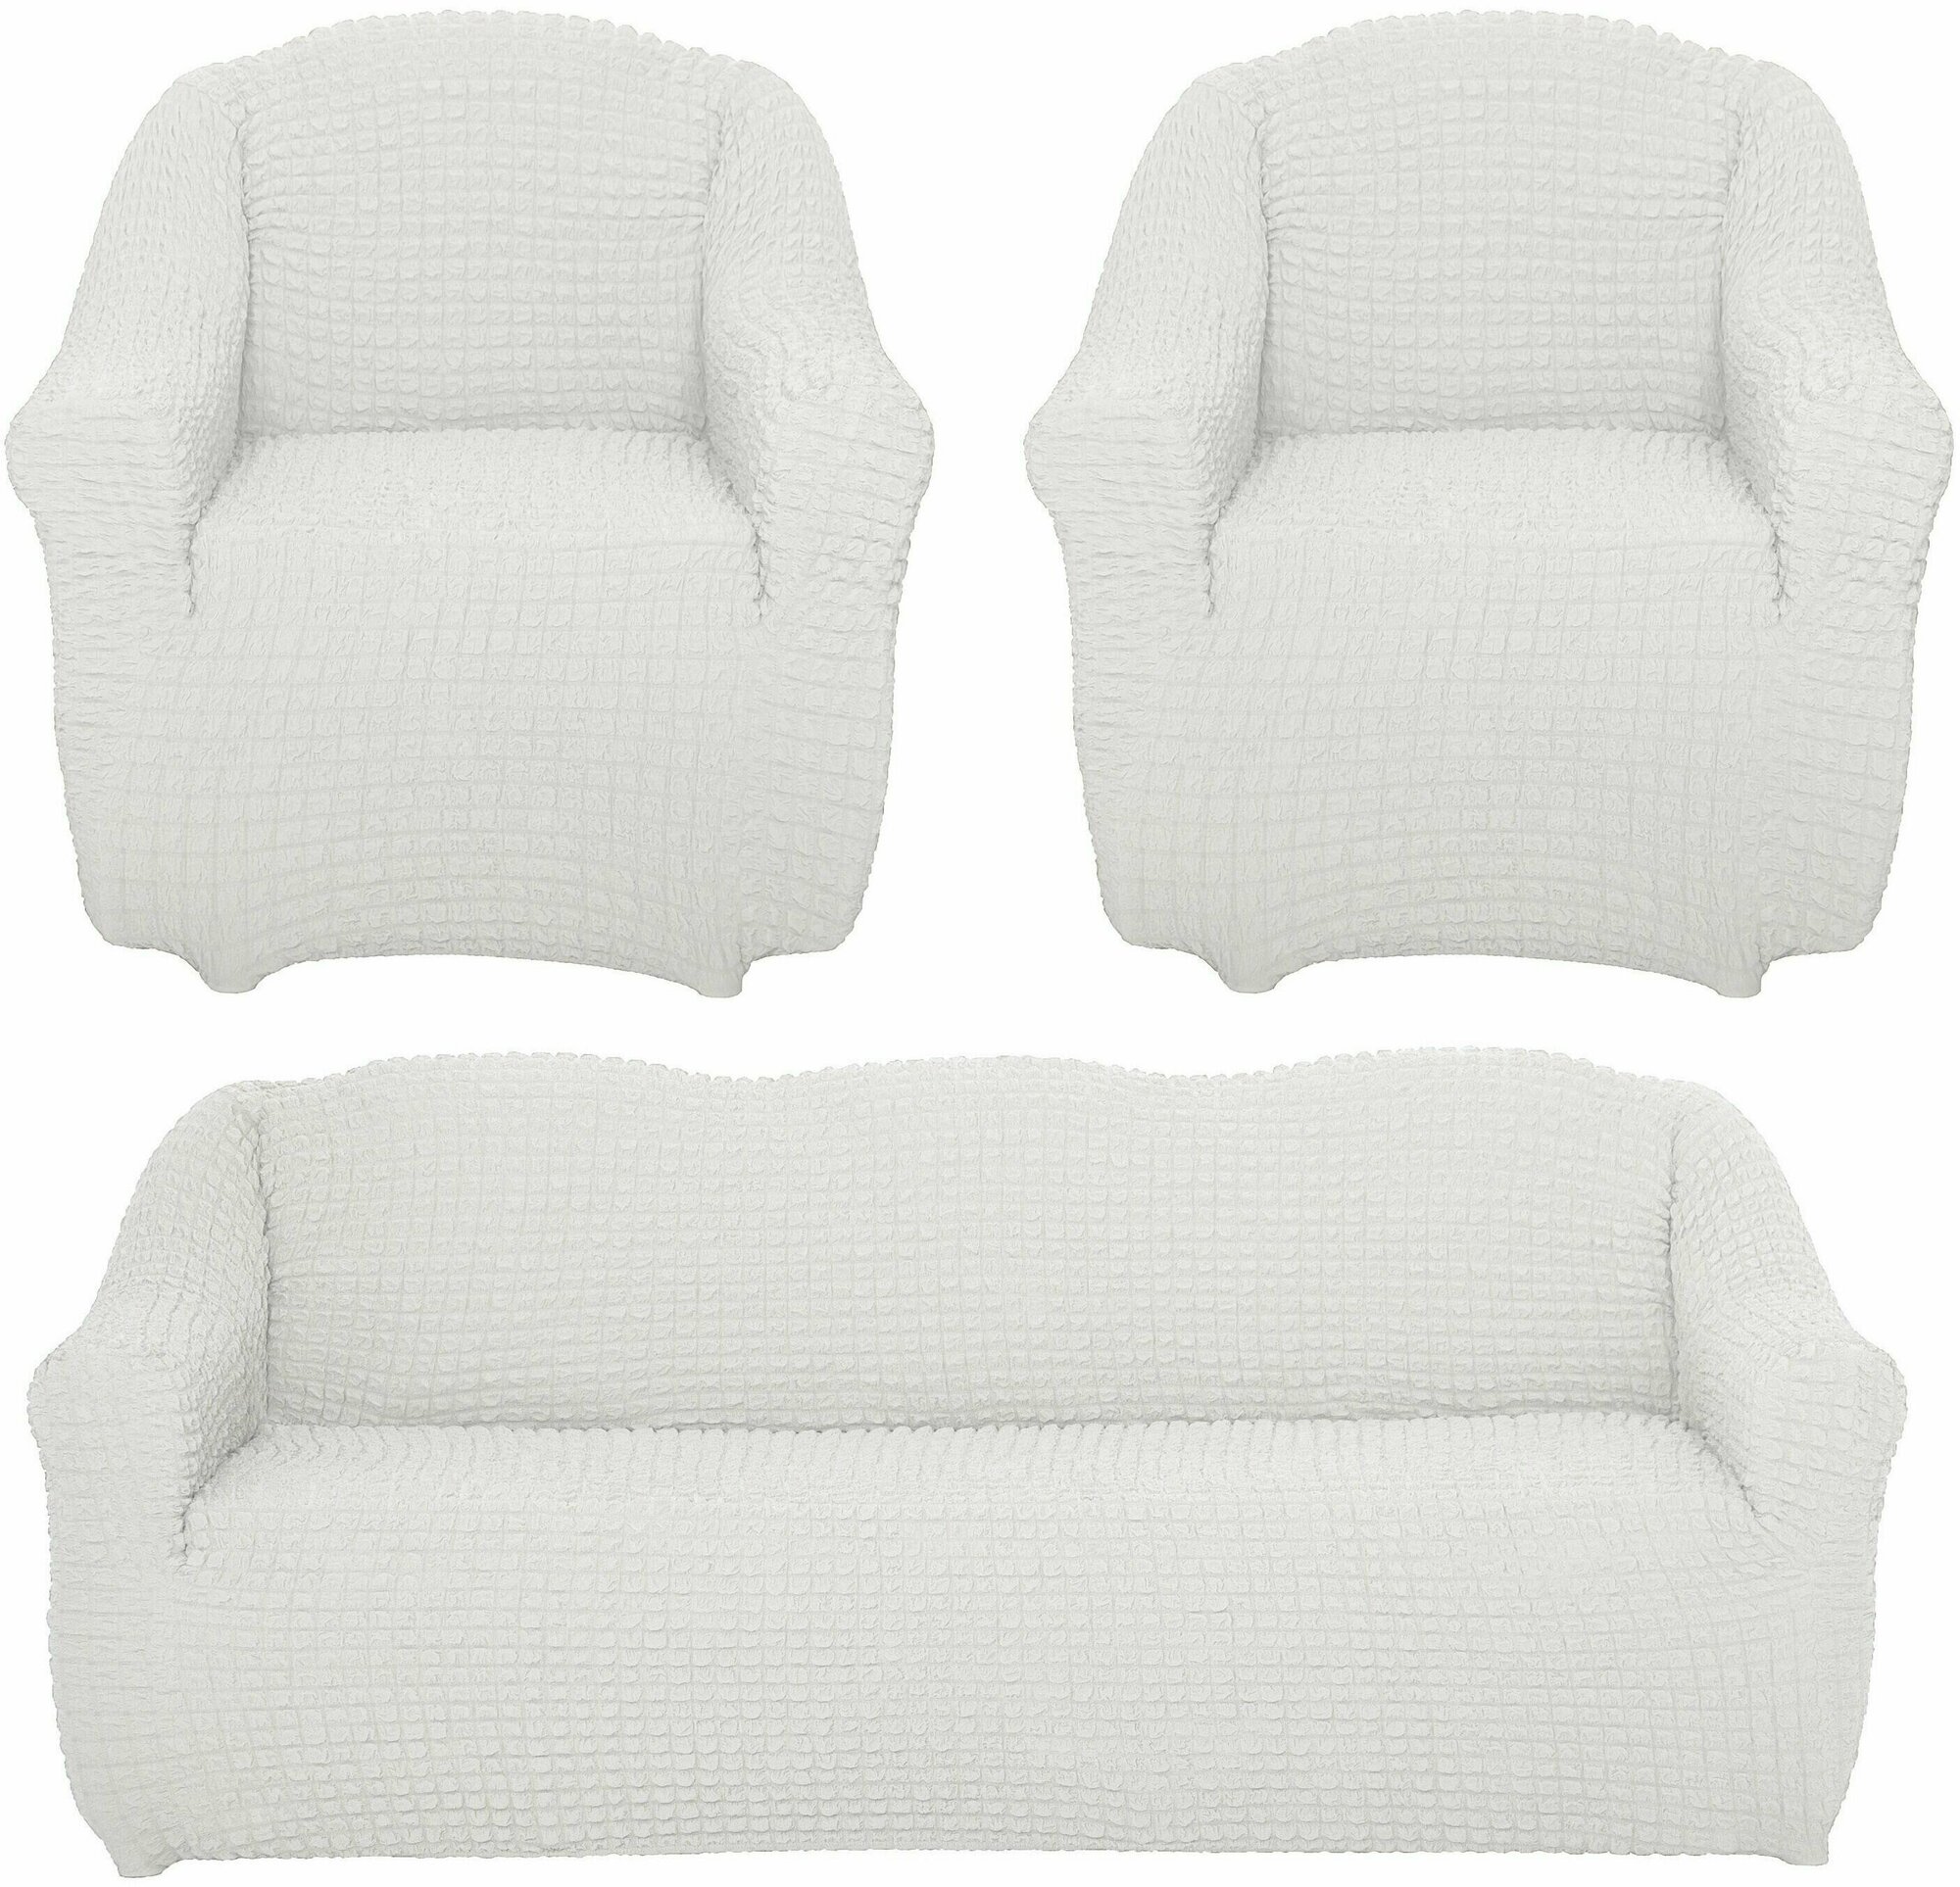 Чехол на диван и 2 кресла без оборки, диван трехместный, на резинке, универсальный, чехол для мягкой мебели,комплект, накидка дивандек на диван и кресло